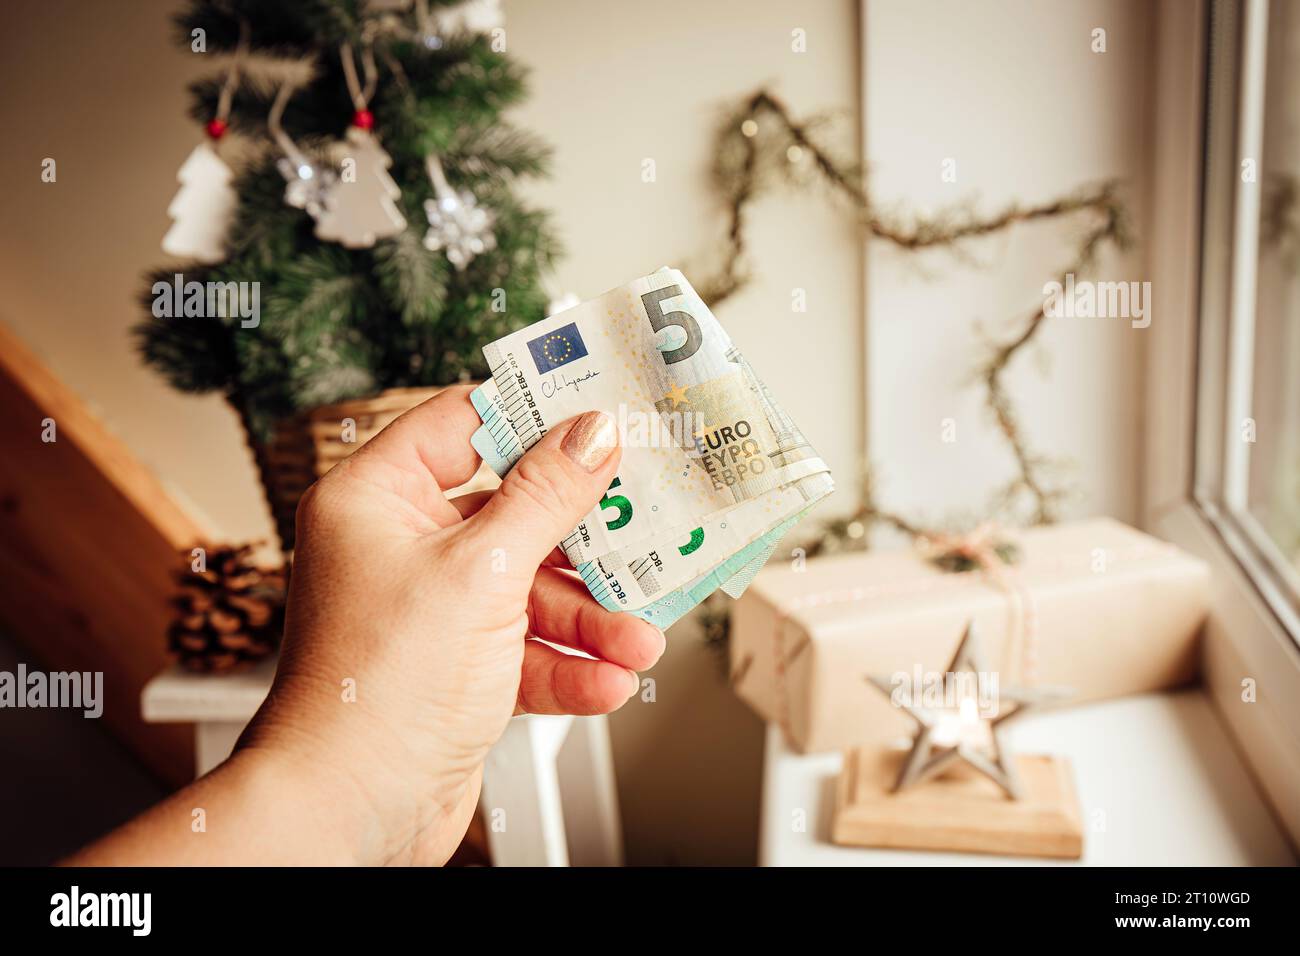 Concept de budget et de finances de Noël. Main de femme tenant de l'argent contre l'arbre de Noël et des ornements à la maison. Banque D'Images